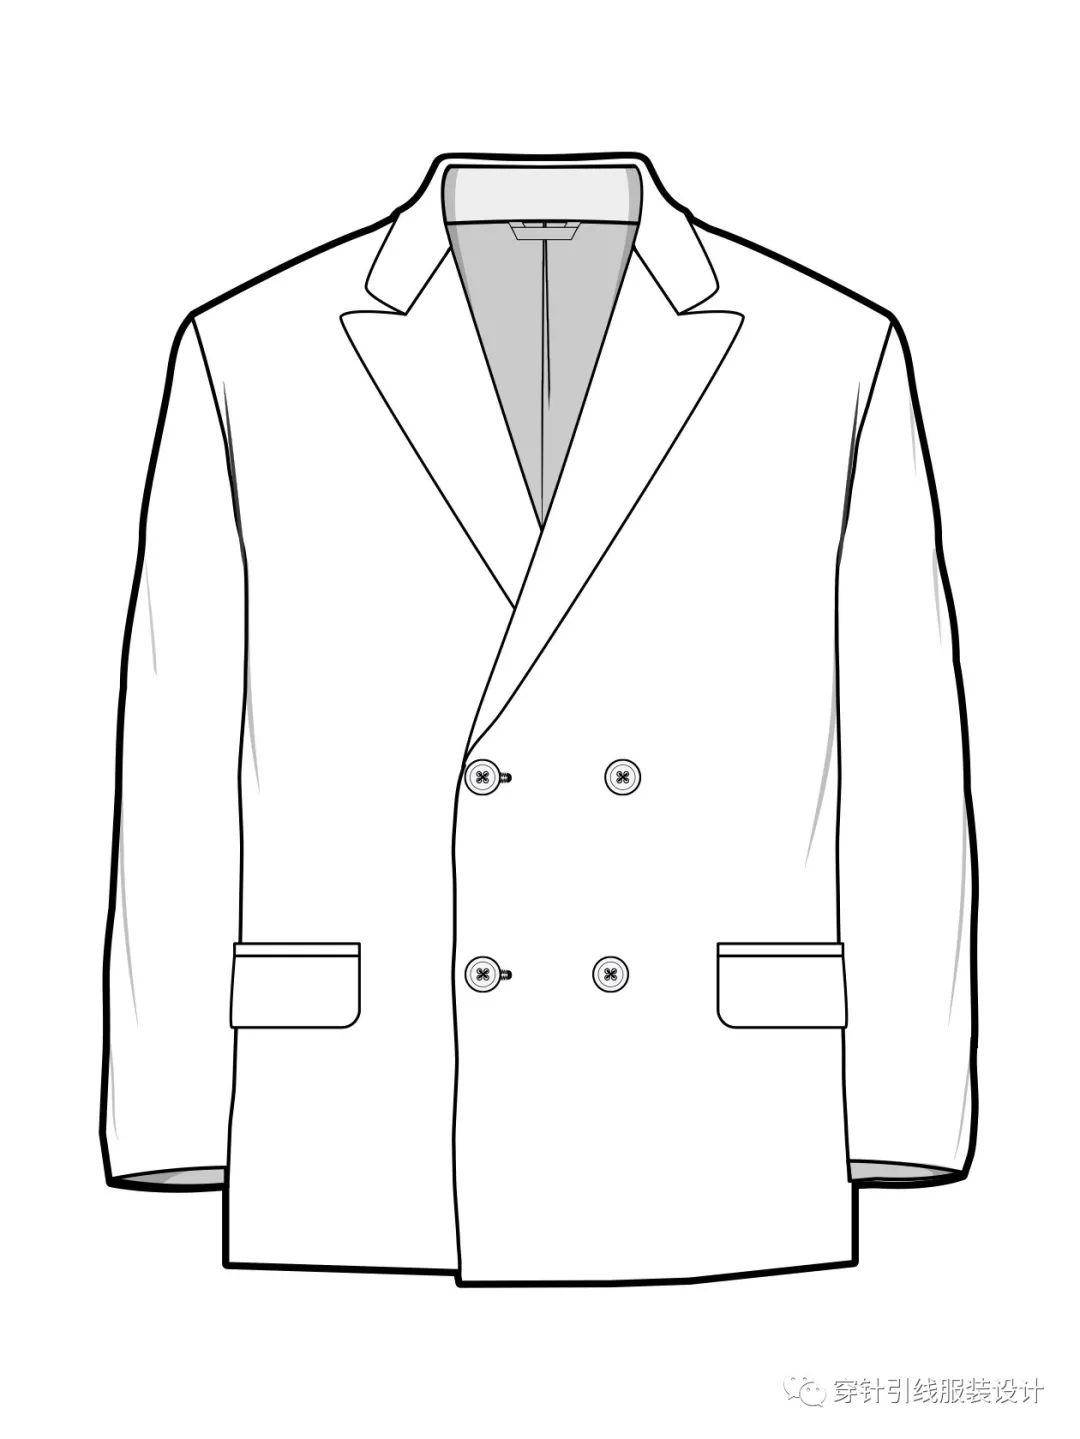 160例外套:夹克,大衣,风衣,西服,羽绒服款式图!(参考模板)!